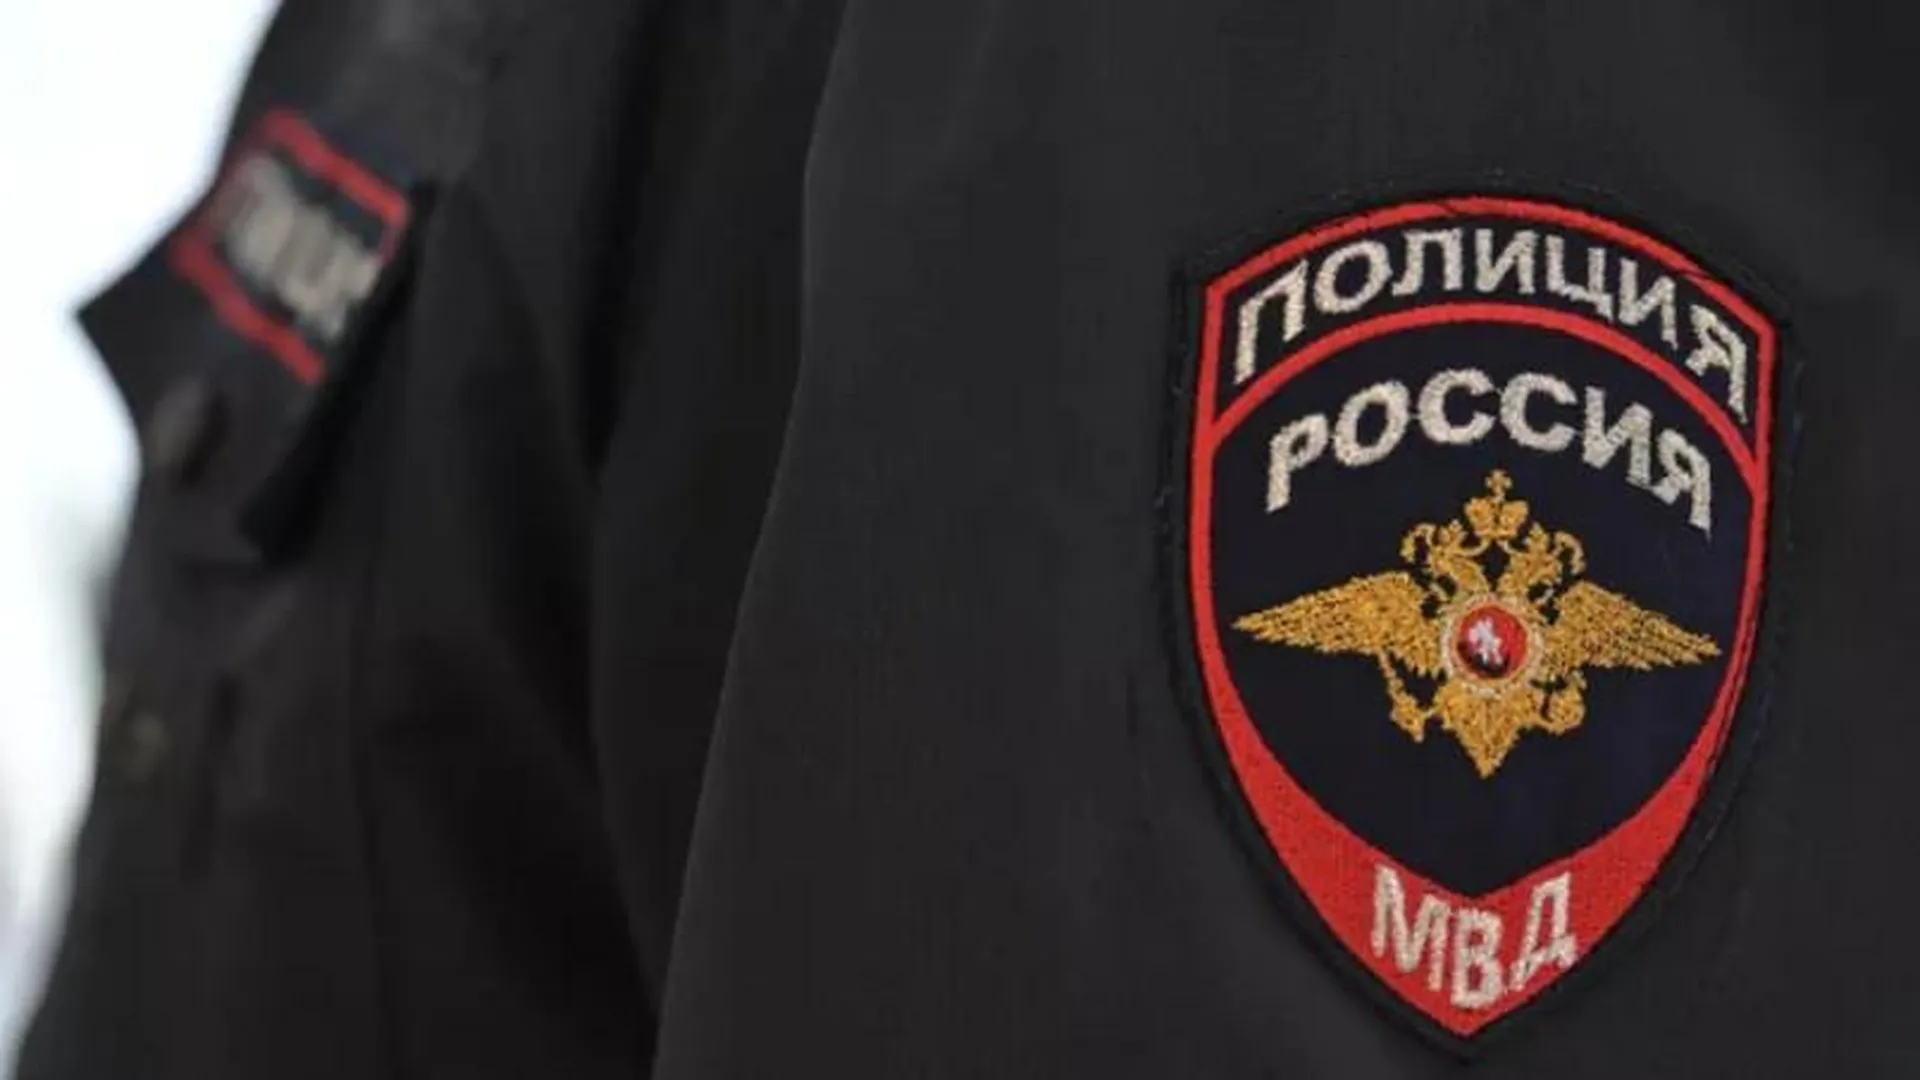 Прохожие нашли гранату на одной из улиц Москвы